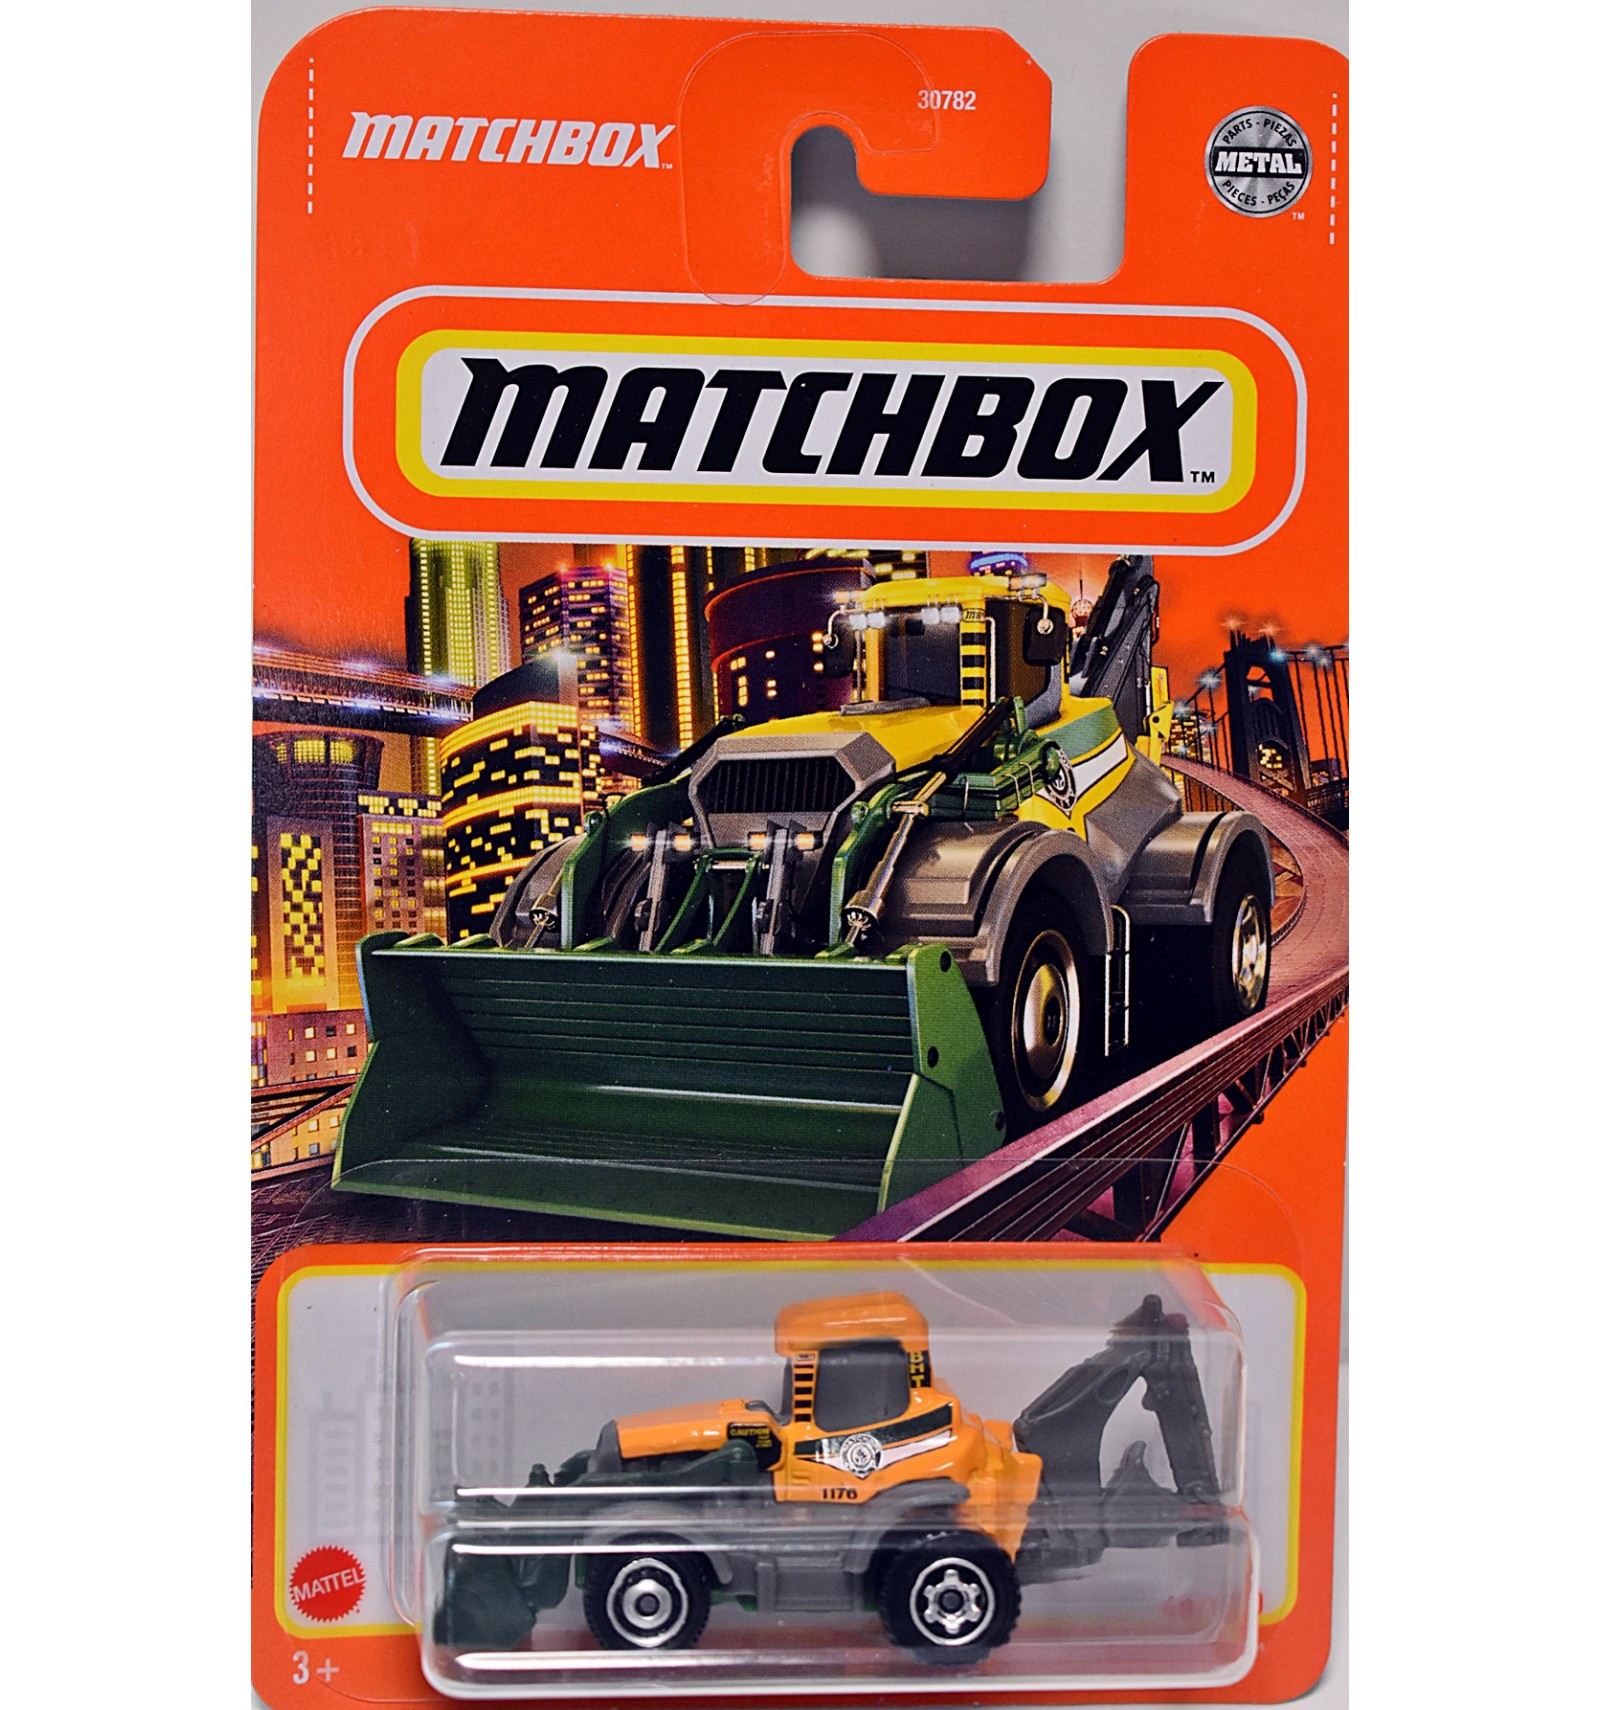 MBX BACKHOE Matchbox New 